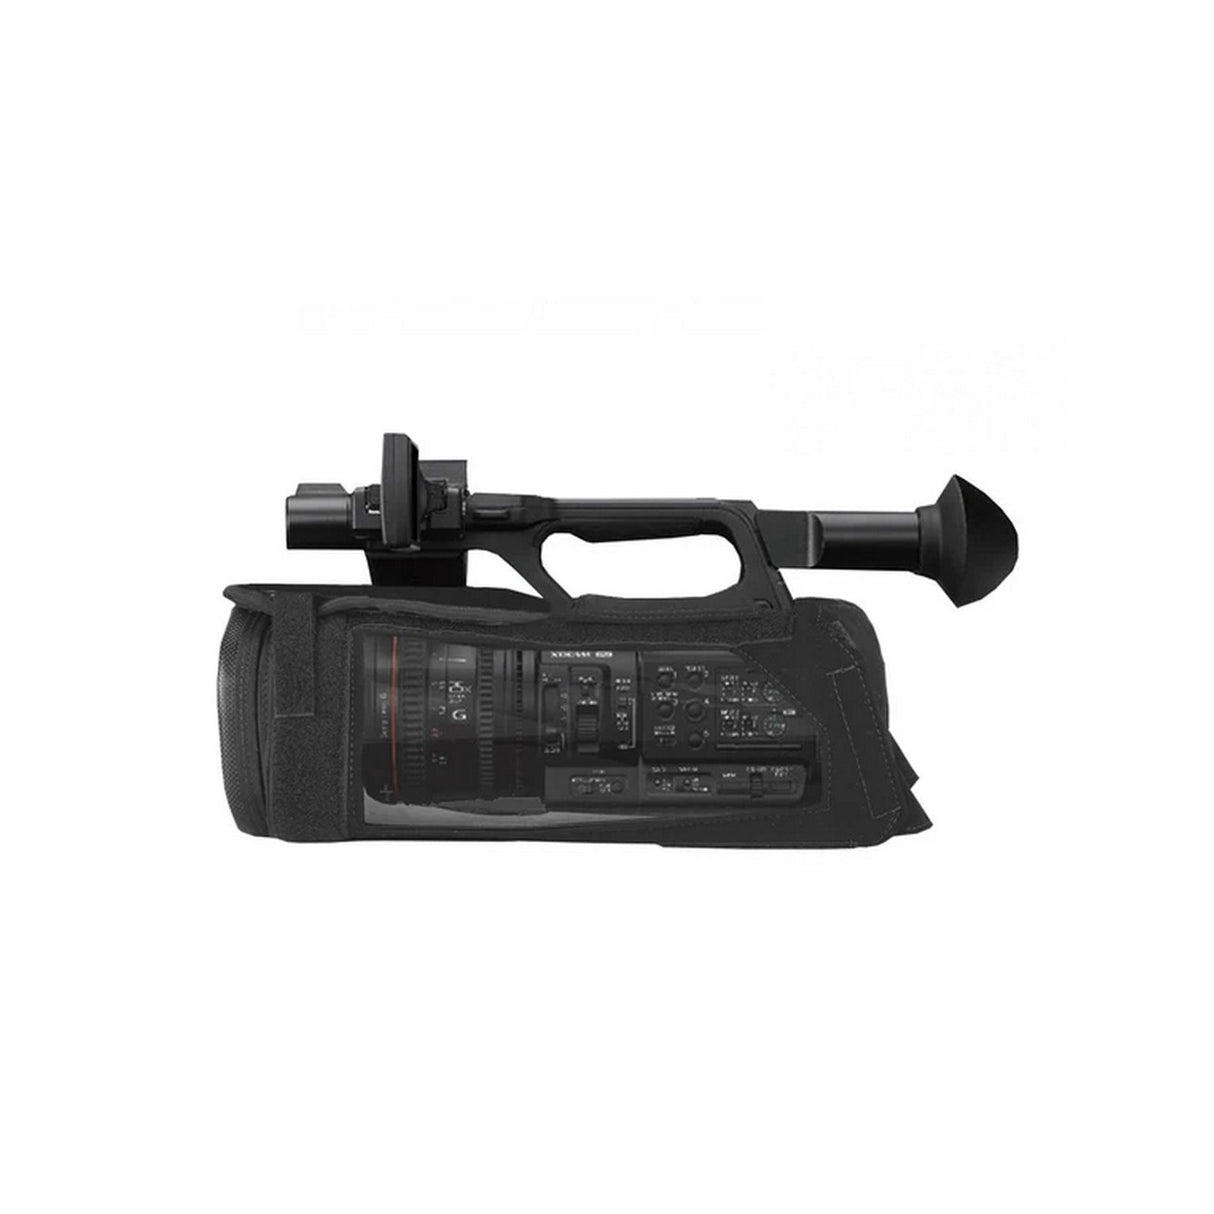 PortaBrace CBA-PXWZ190B Camera Body Armor Case for Sony PXW-Z190, Black